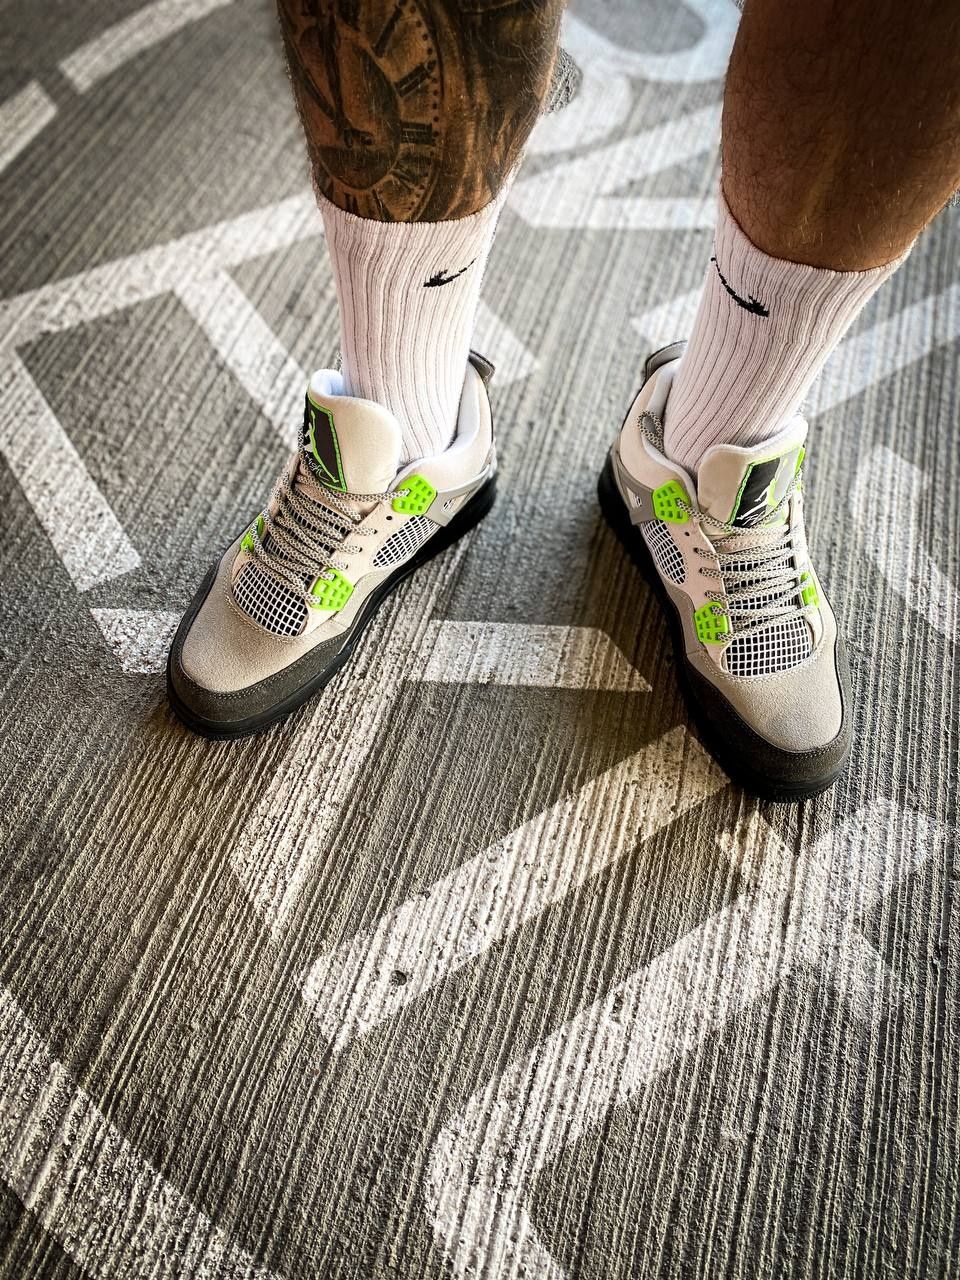 Nike Air Jordan 4 Retro 95 Neon